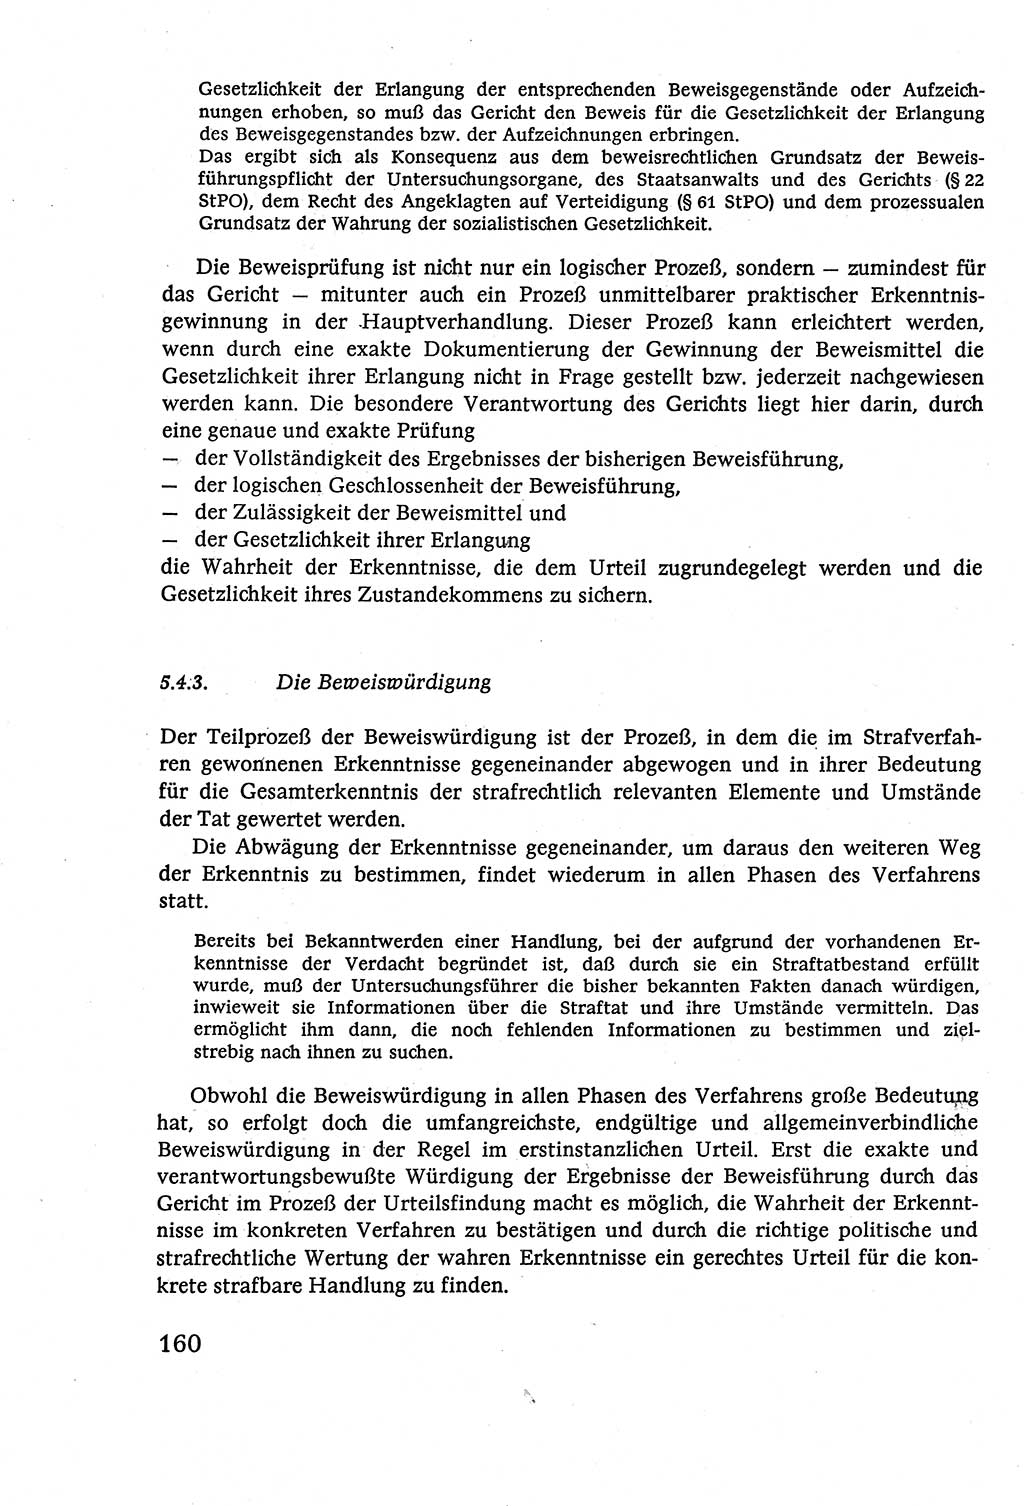 Strafverfahrensrecht [Deutsche Demokratische Republik (DDR)], Lehrbuch 1977, Seite 160 (Strafverf.-R. DDR Lb. 1977, S. 160)